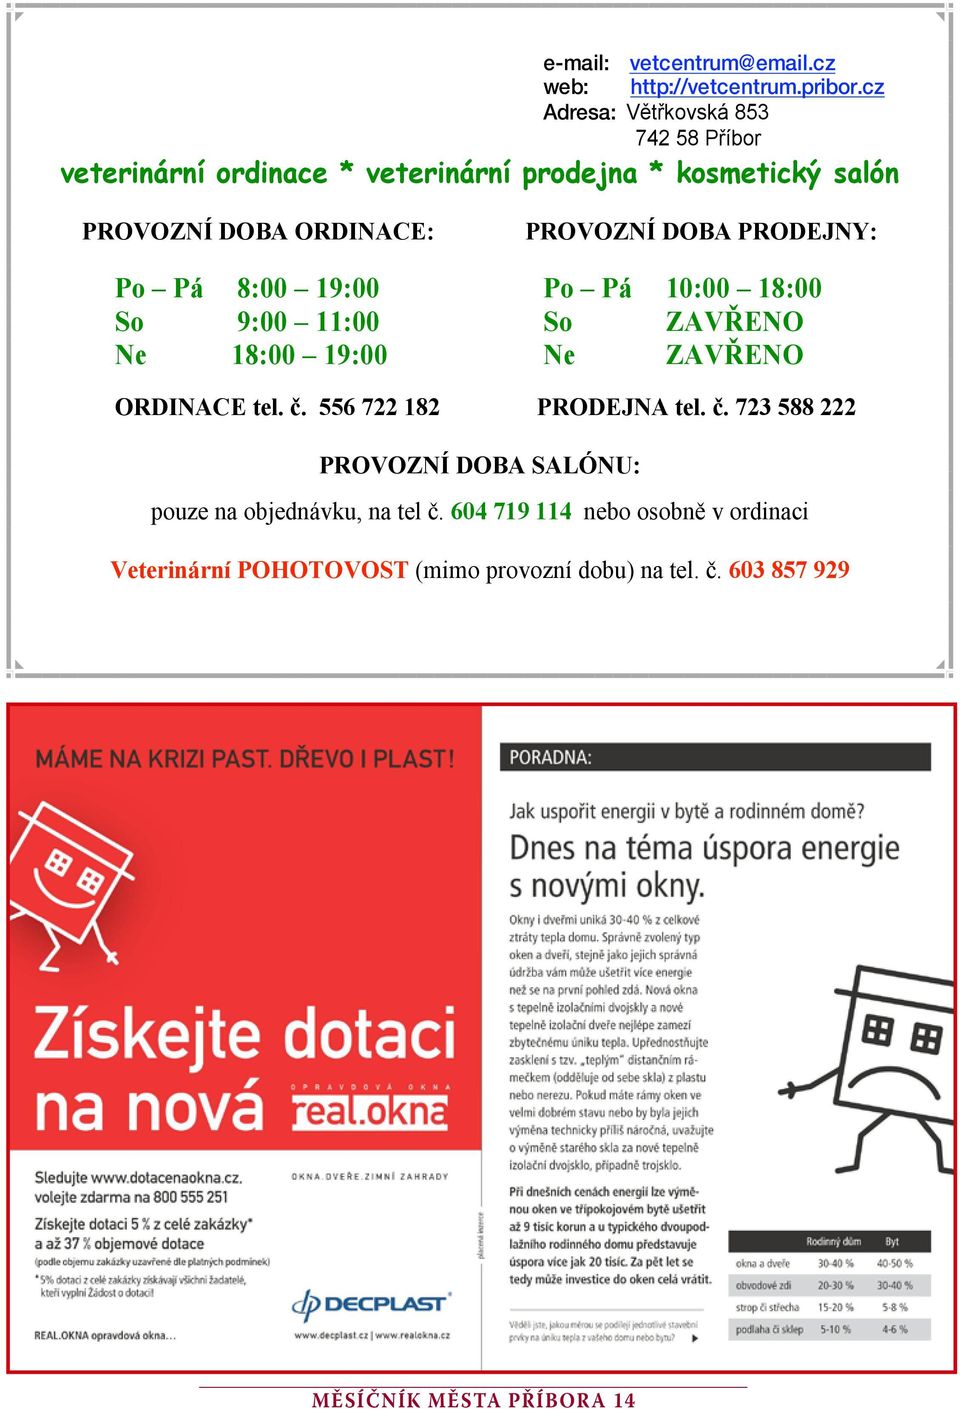 Měsíčník města příbor a 1 - PDF Free Download